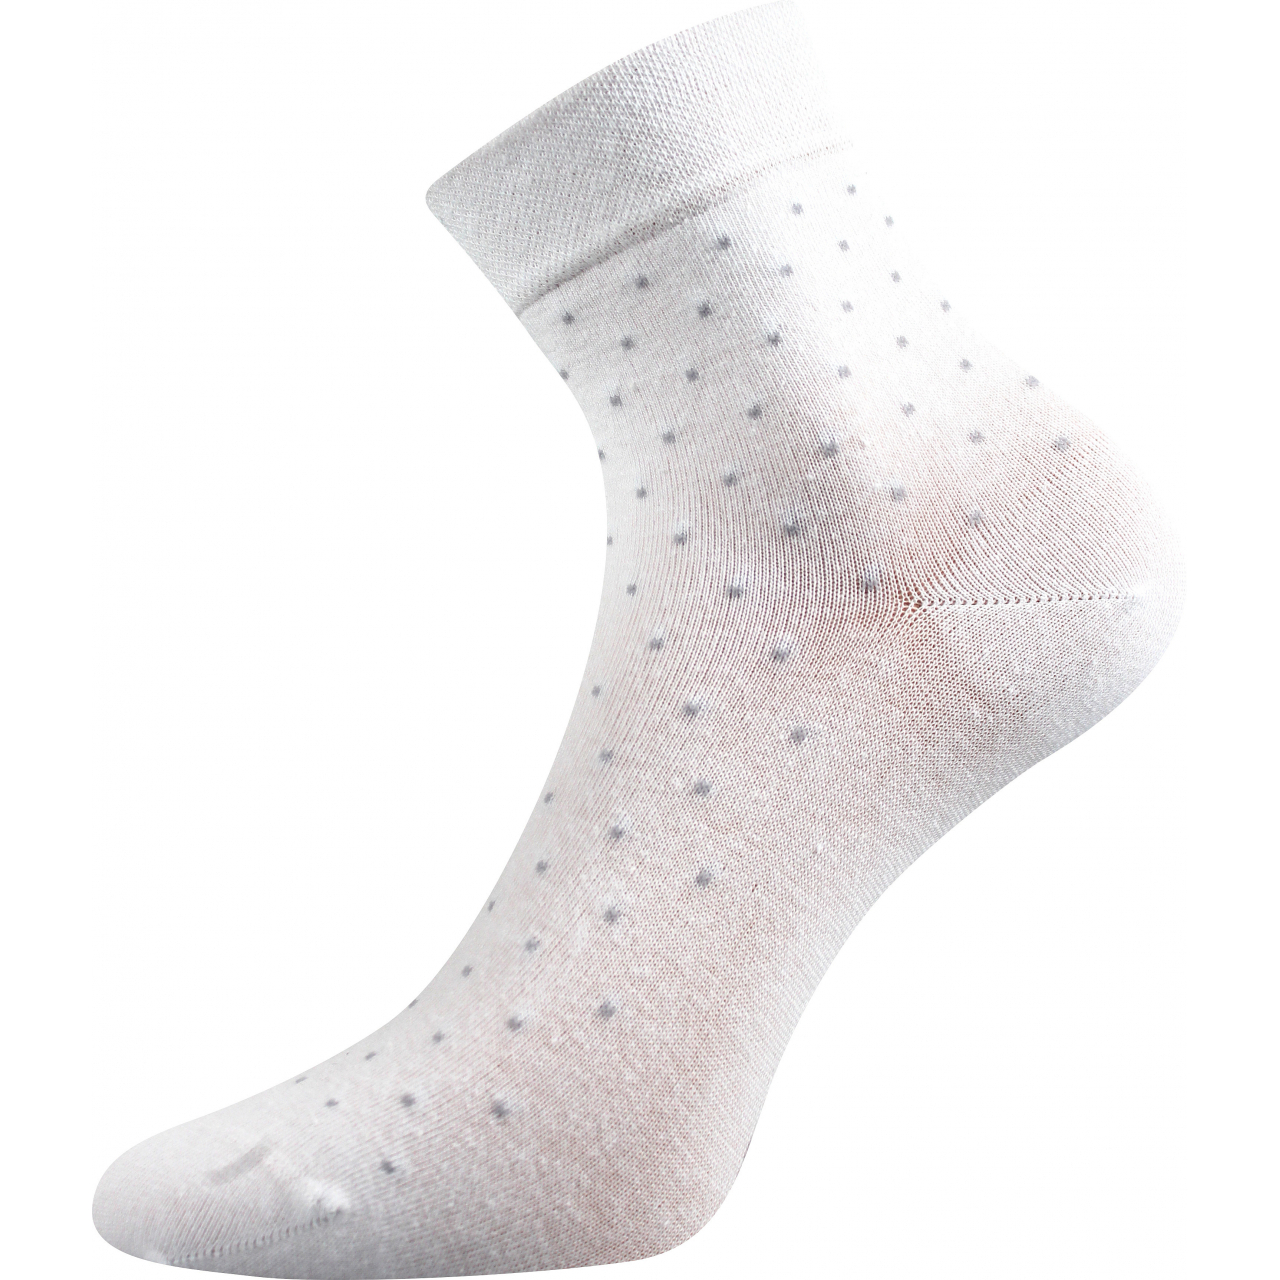 Ponožky dámské elegantní Lonka Fiona - bílé, 35-38